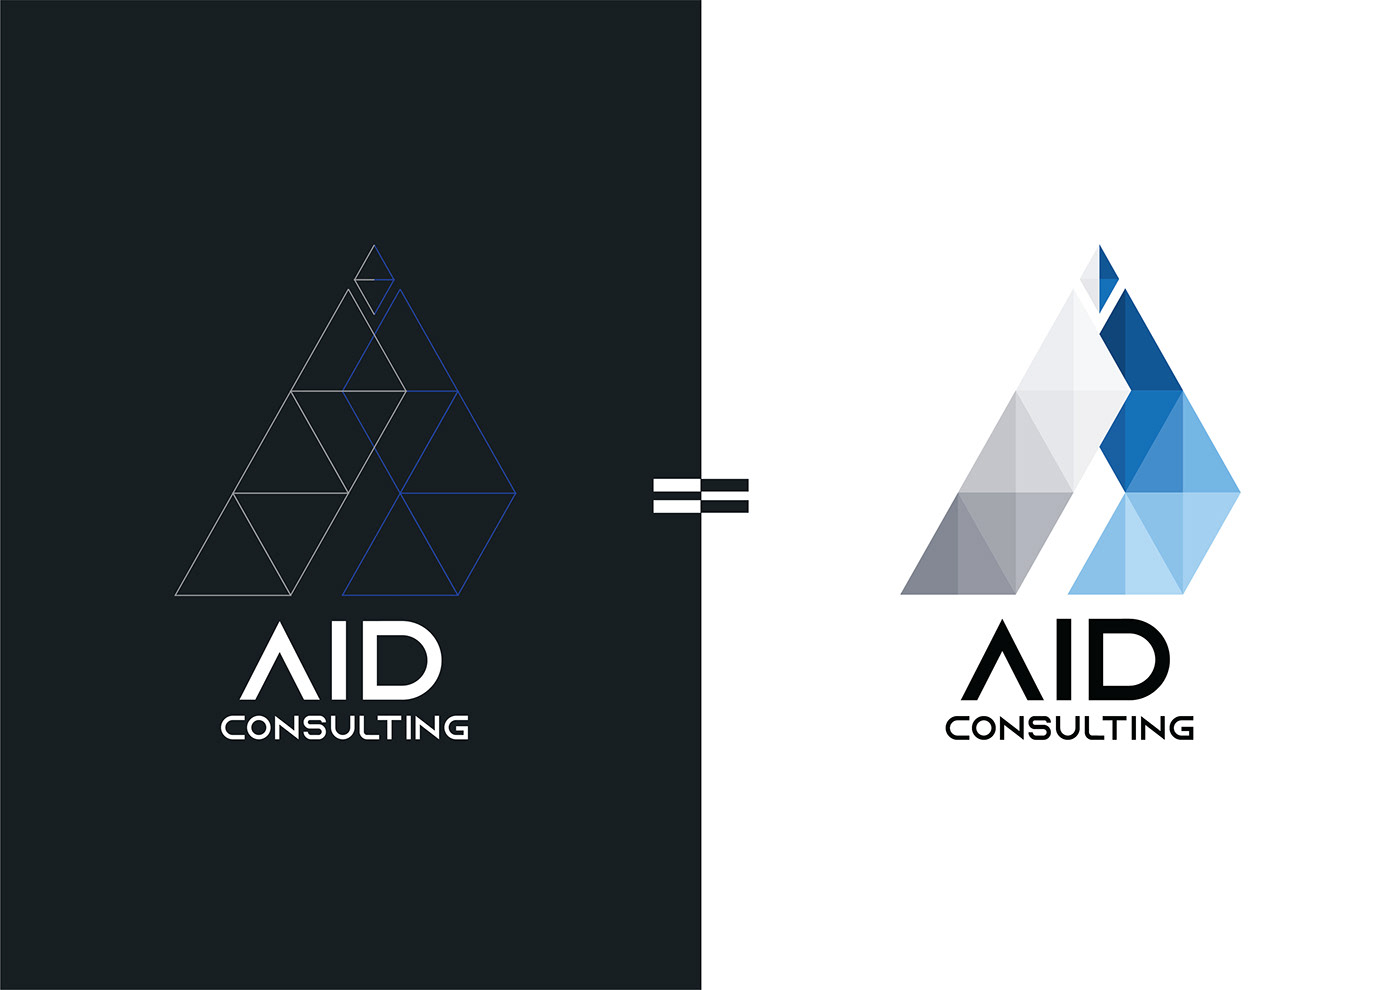 adriana Aid AID Consulting brand Consulting digital duarte logo marketing  